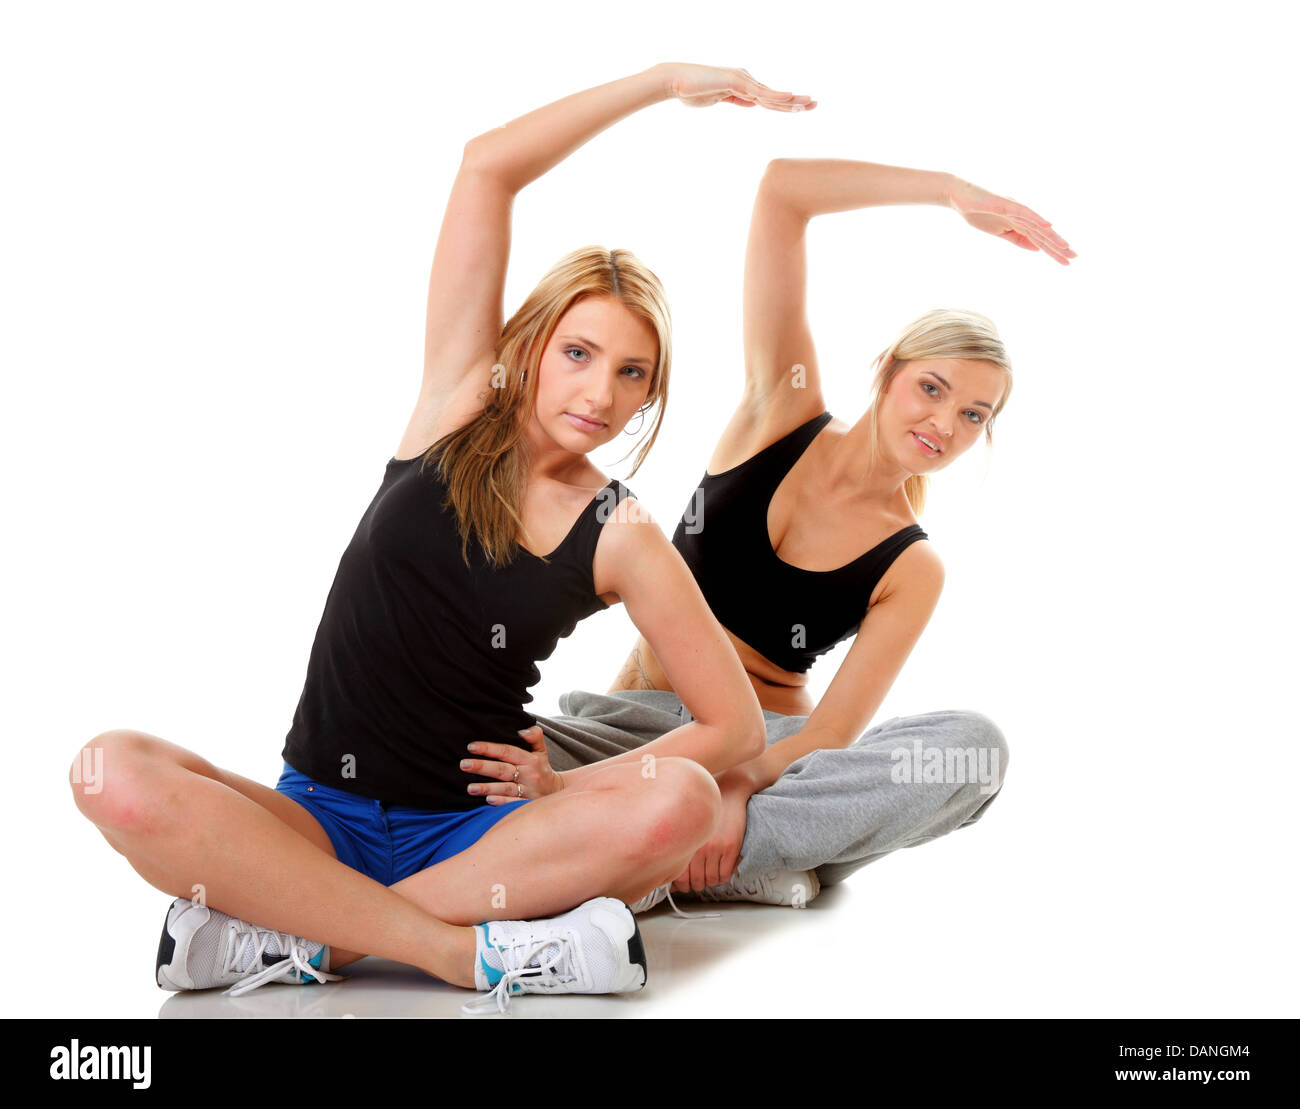 Zwei Frauen in voller Länge tun stretching Fitness Übung isolierten auf weißen Hintergrund Stockfoto